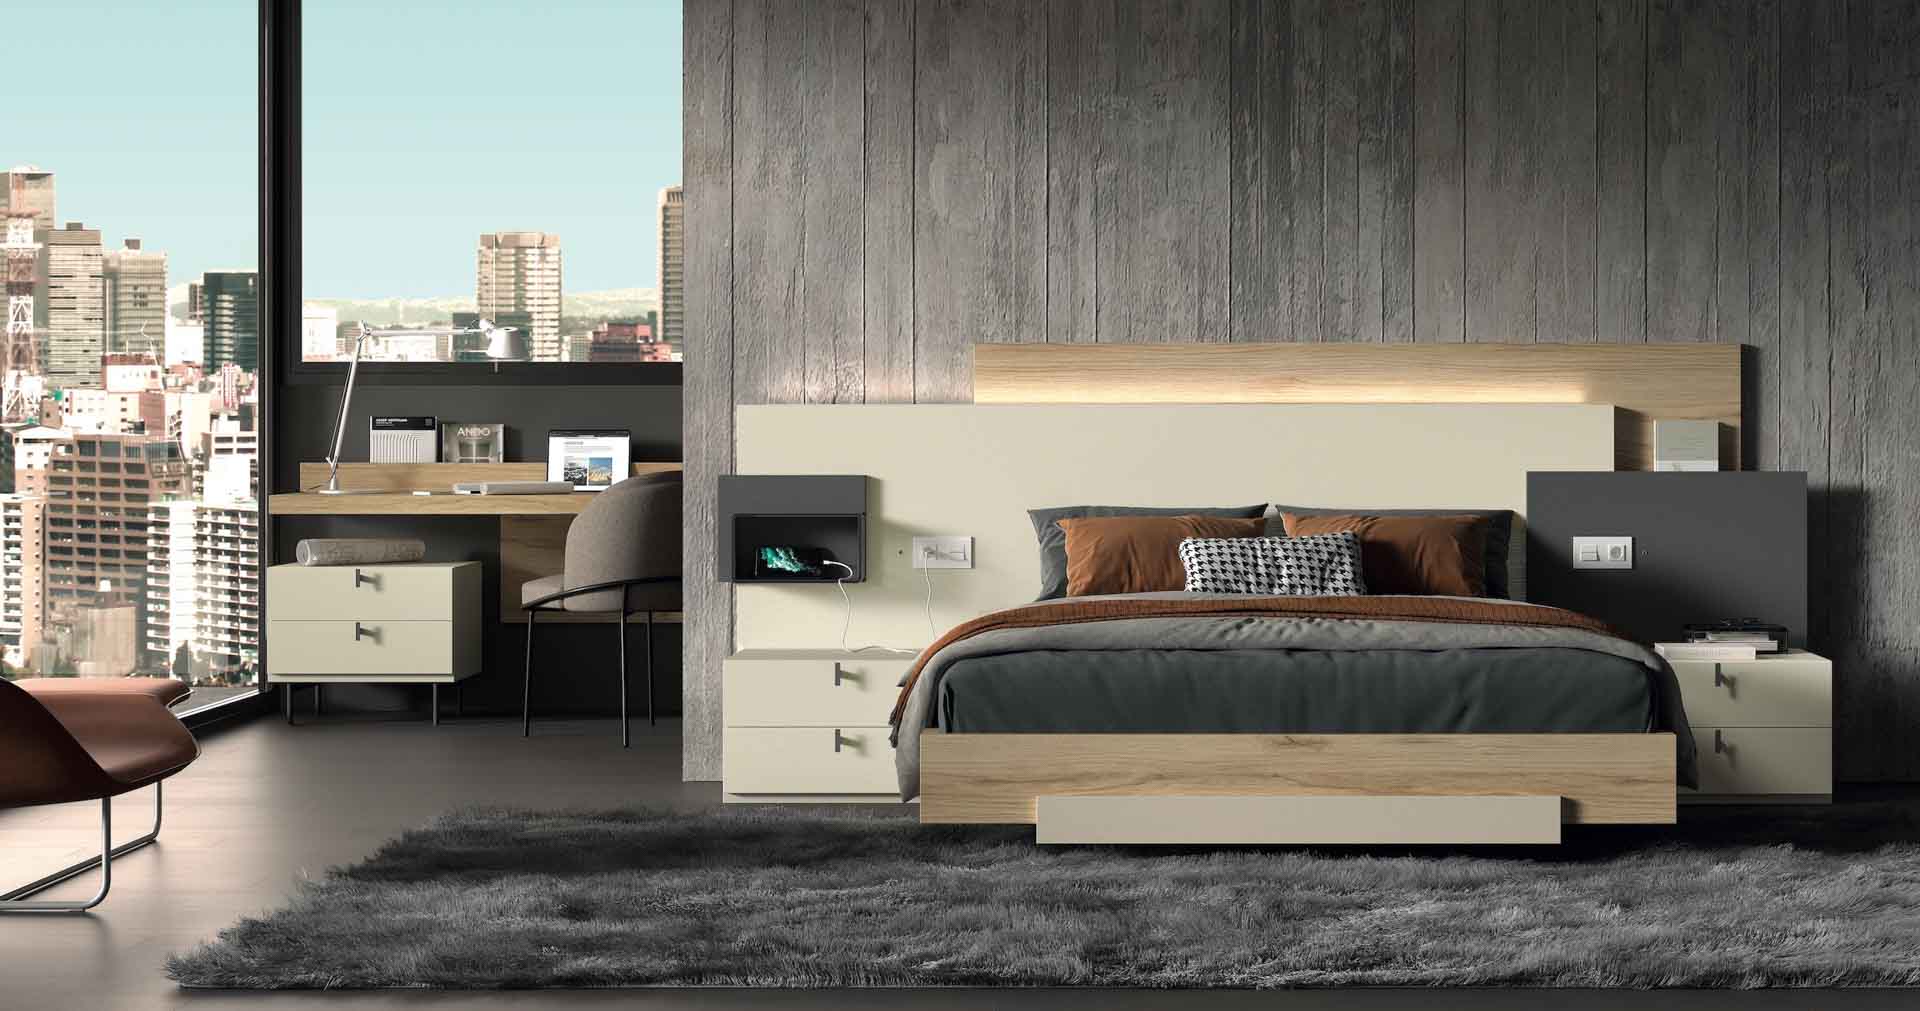 Diseño de mobiliario de dormitorio 60